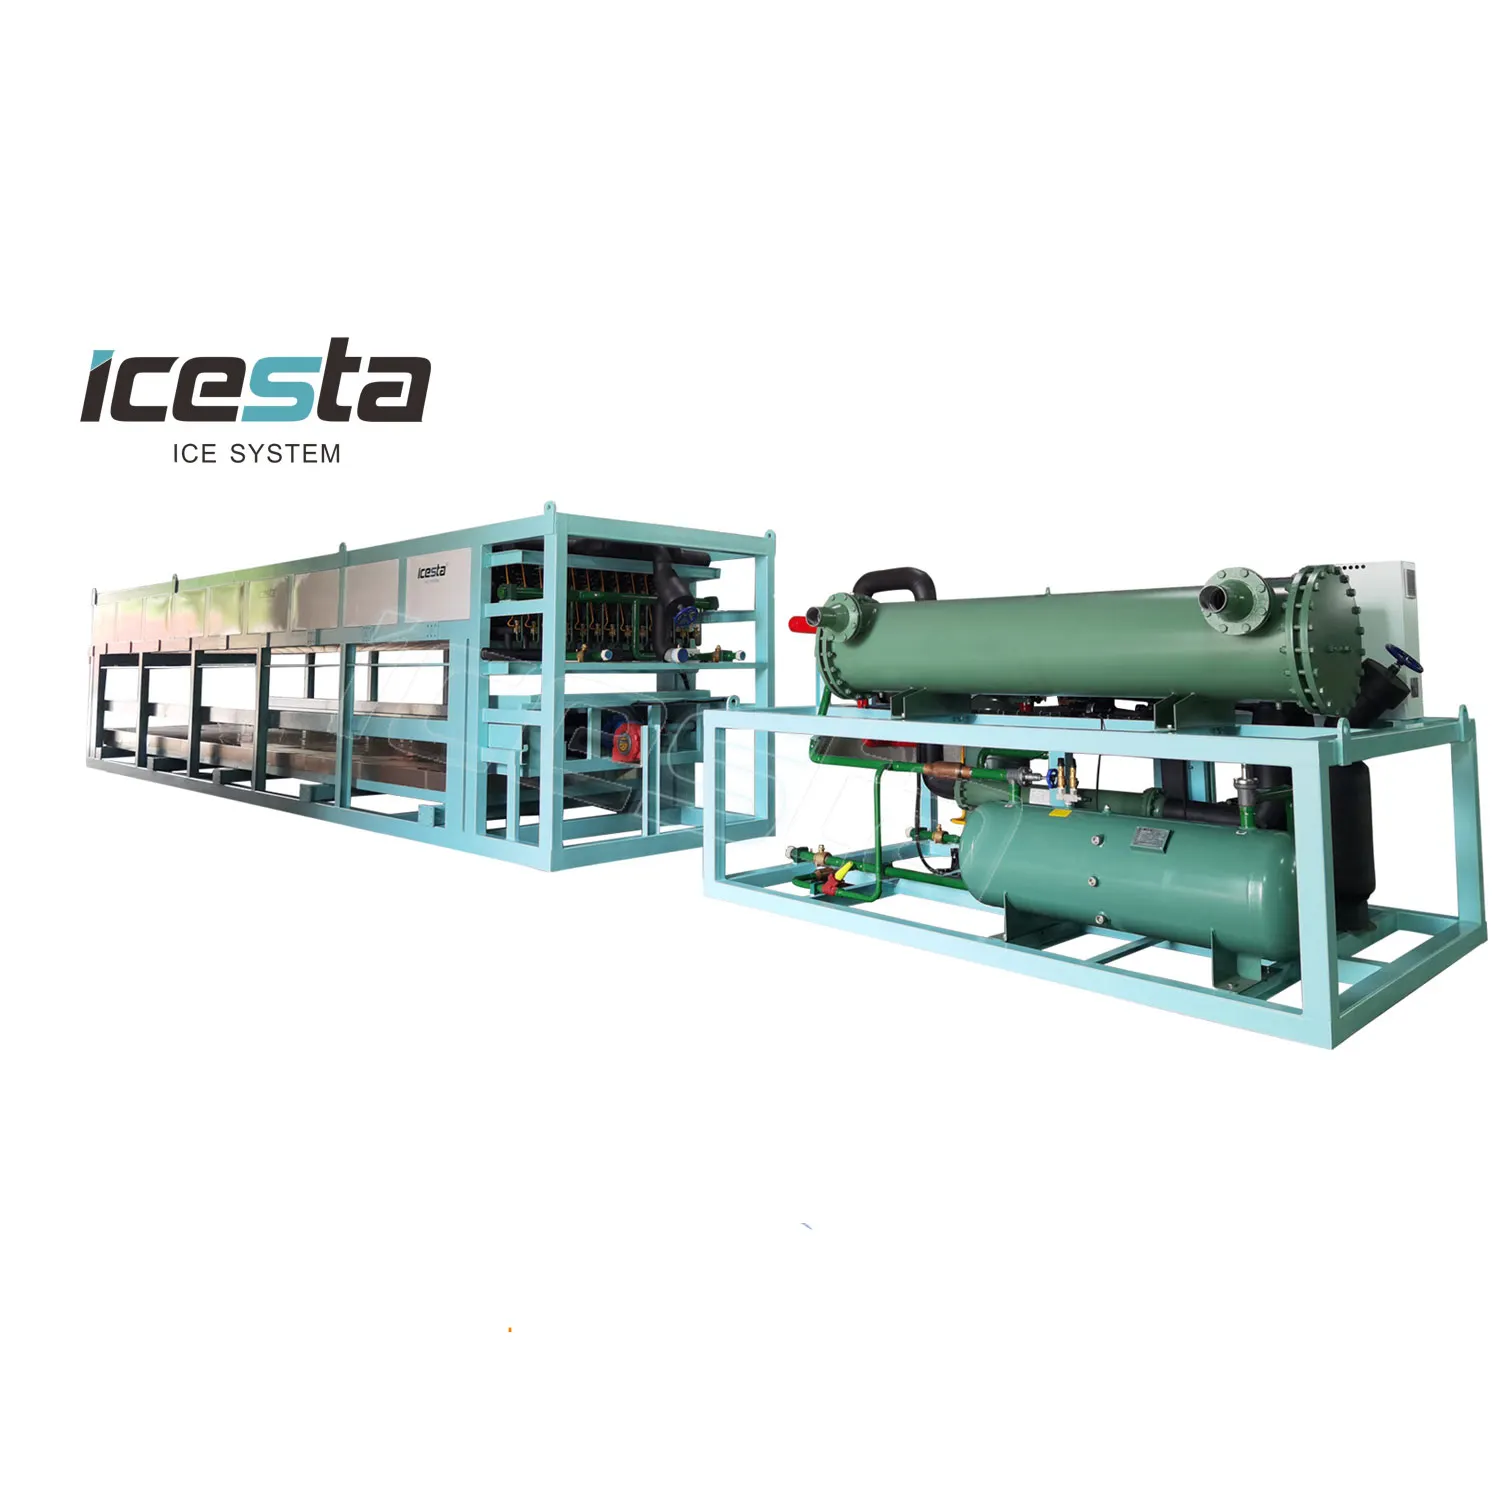 ICESTA mesin es blok pendingin langsung industri otomatis 25t, dapat disesuaikan produktivitas tinggi